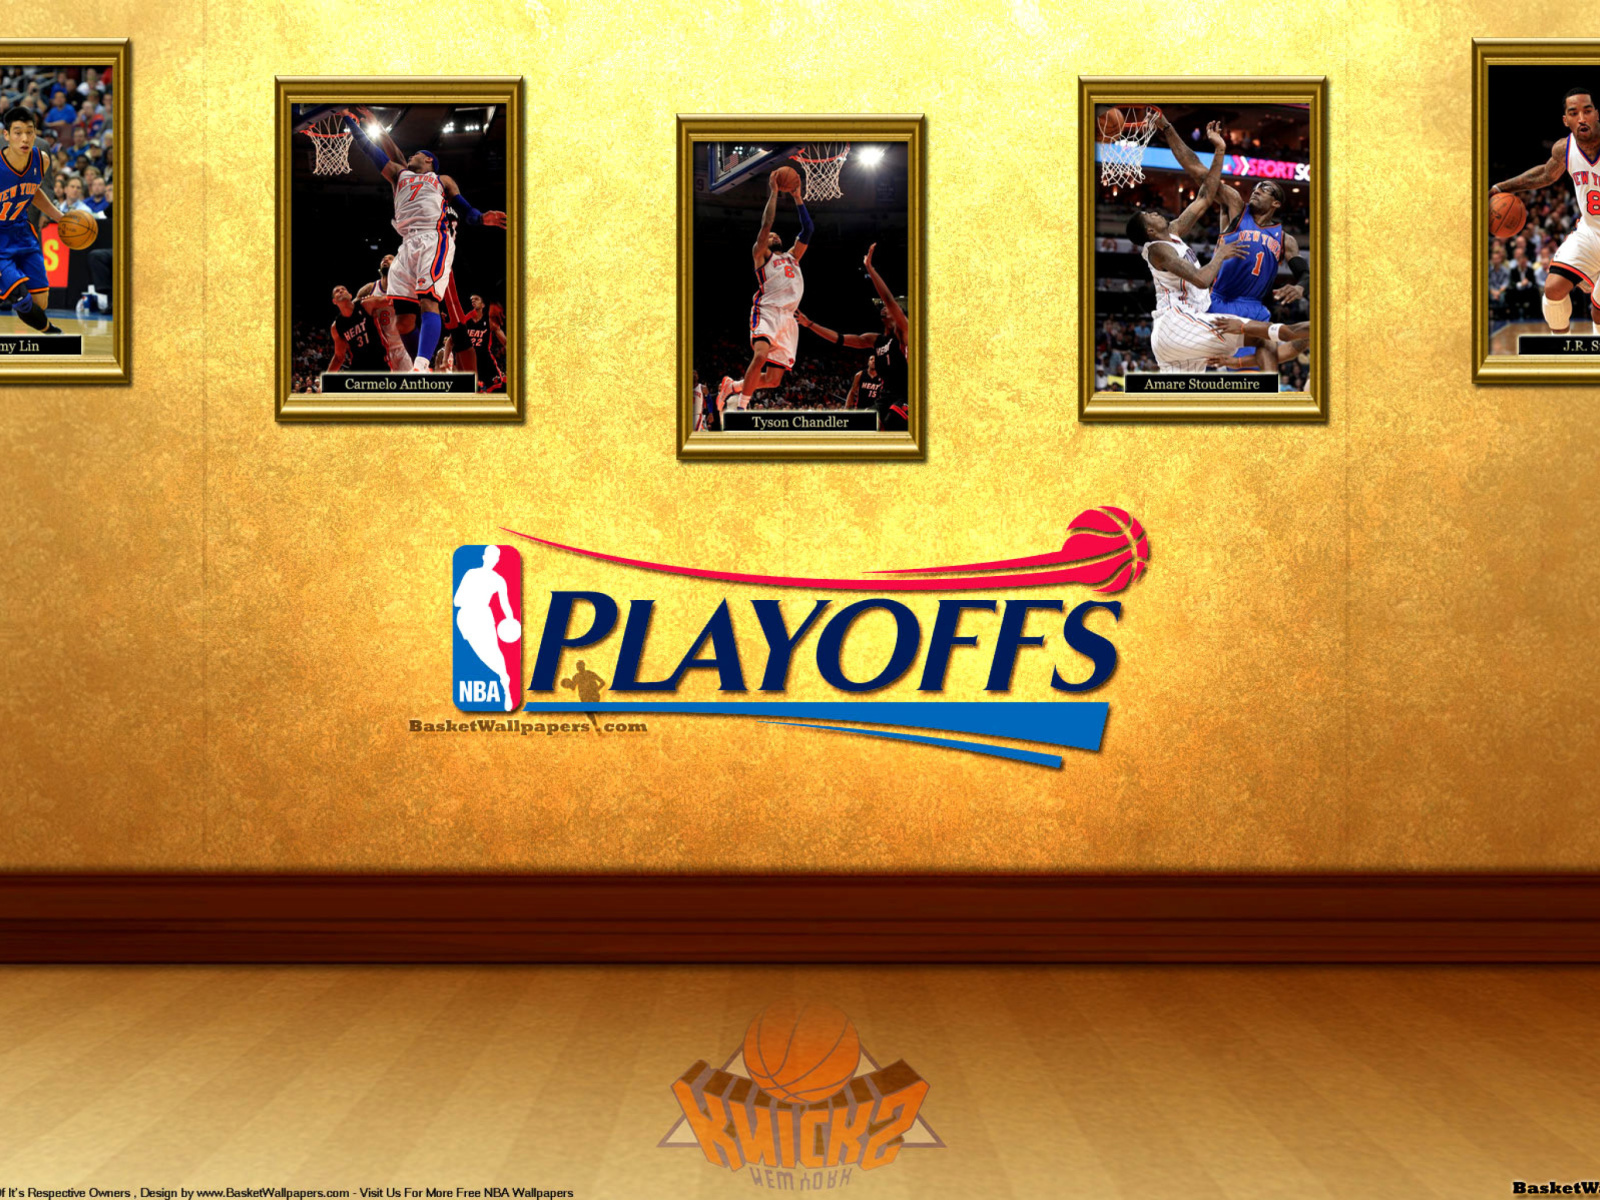 New York Knicks NBA Playoffs wallpaper 1600x1200